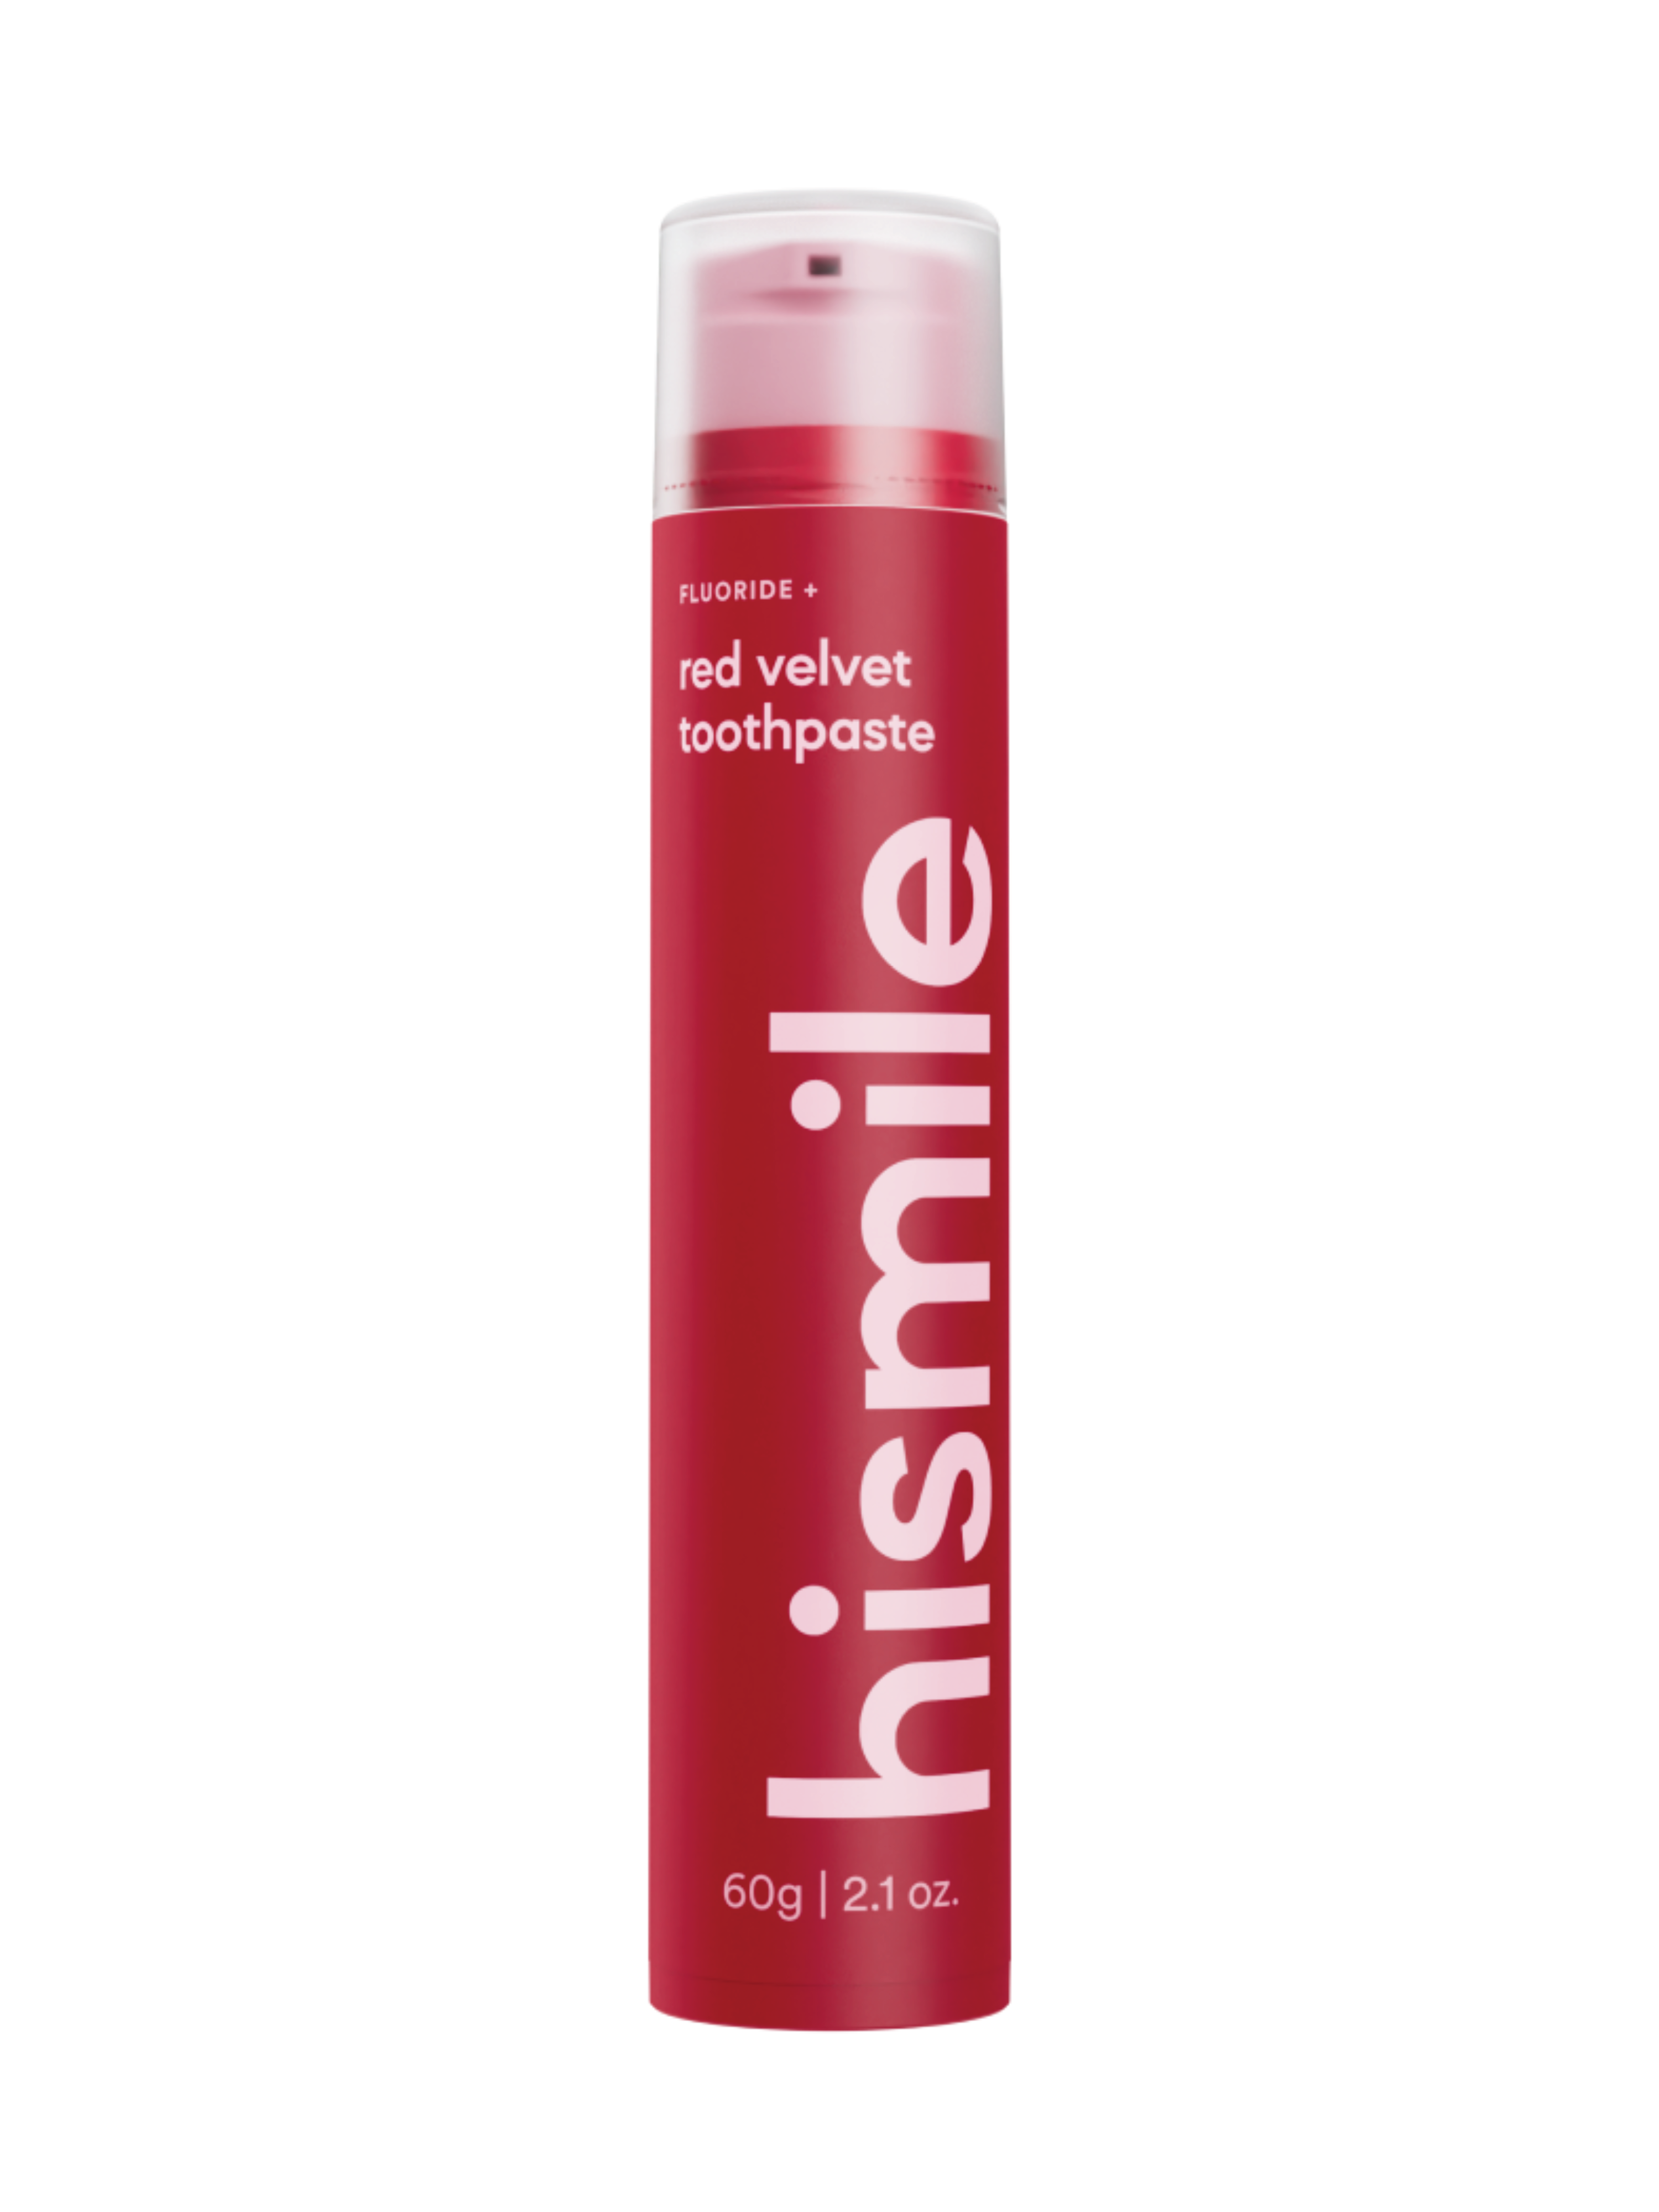 Hismile Red Velvet Toothpaste, 60 g